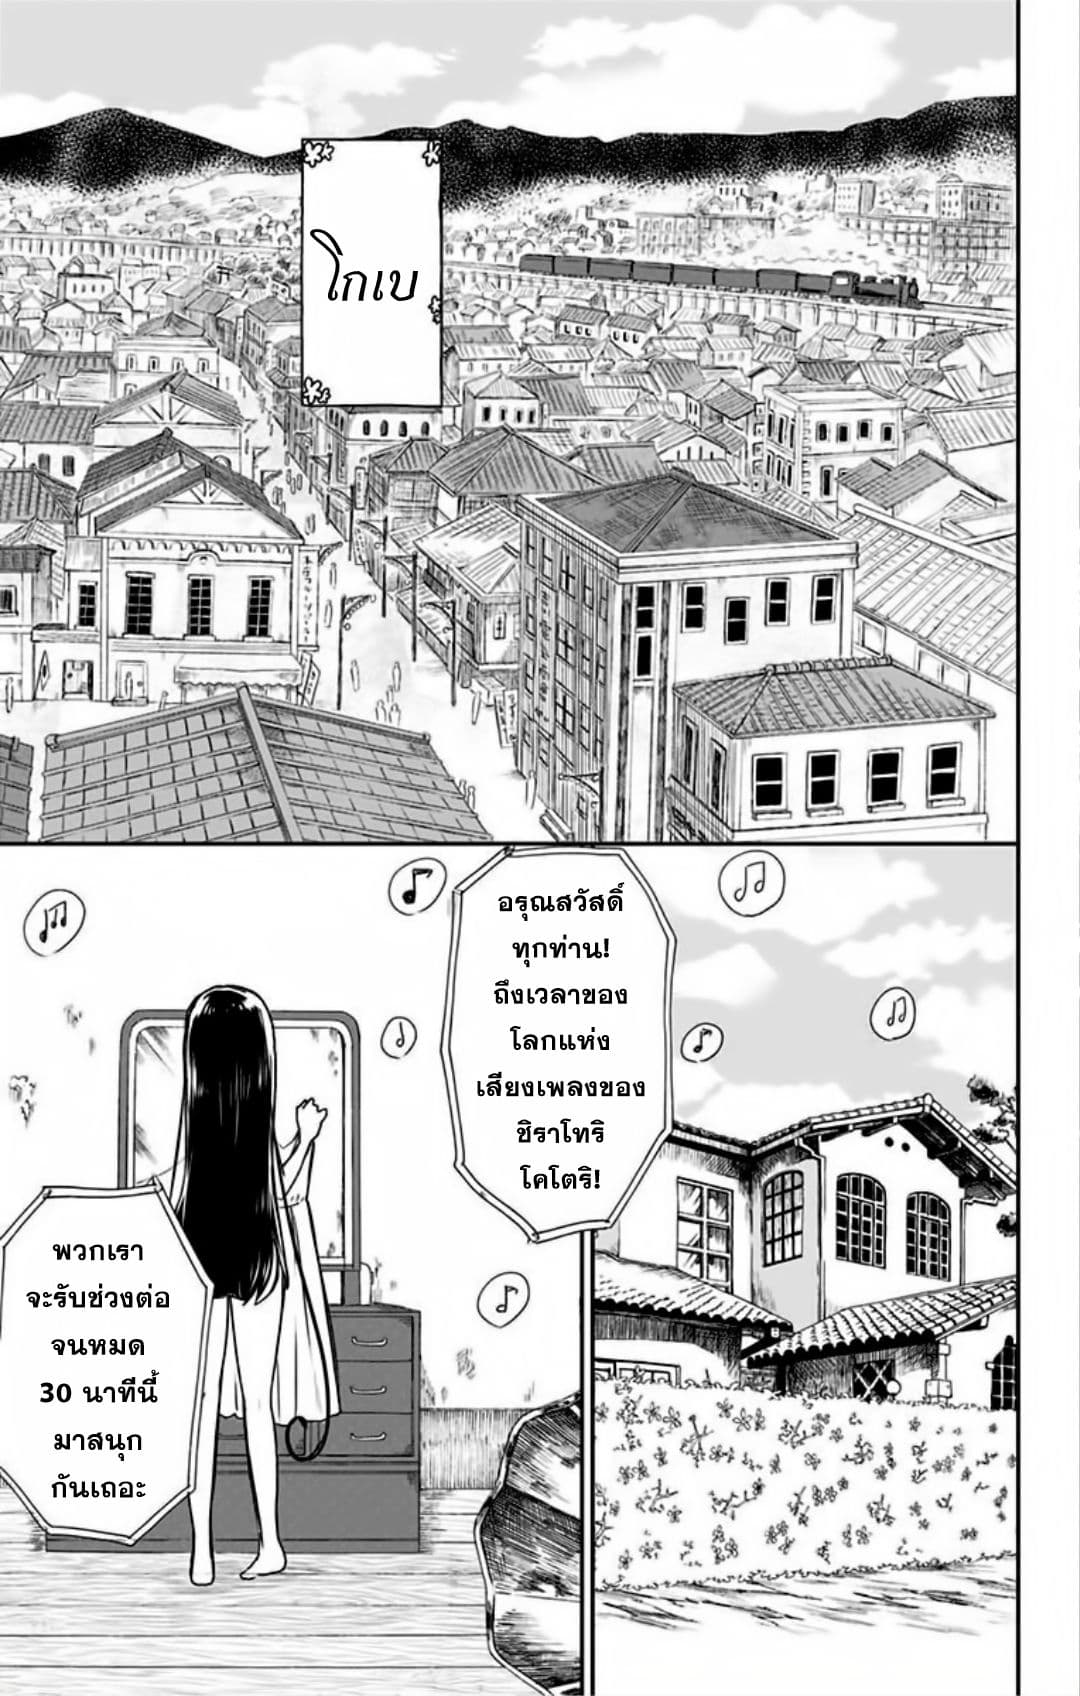 Shouwa Otome Otogibanashi เรื่องเล่าของสาวน้อย ยุคโชวะ ตอนที่ 2 (5)